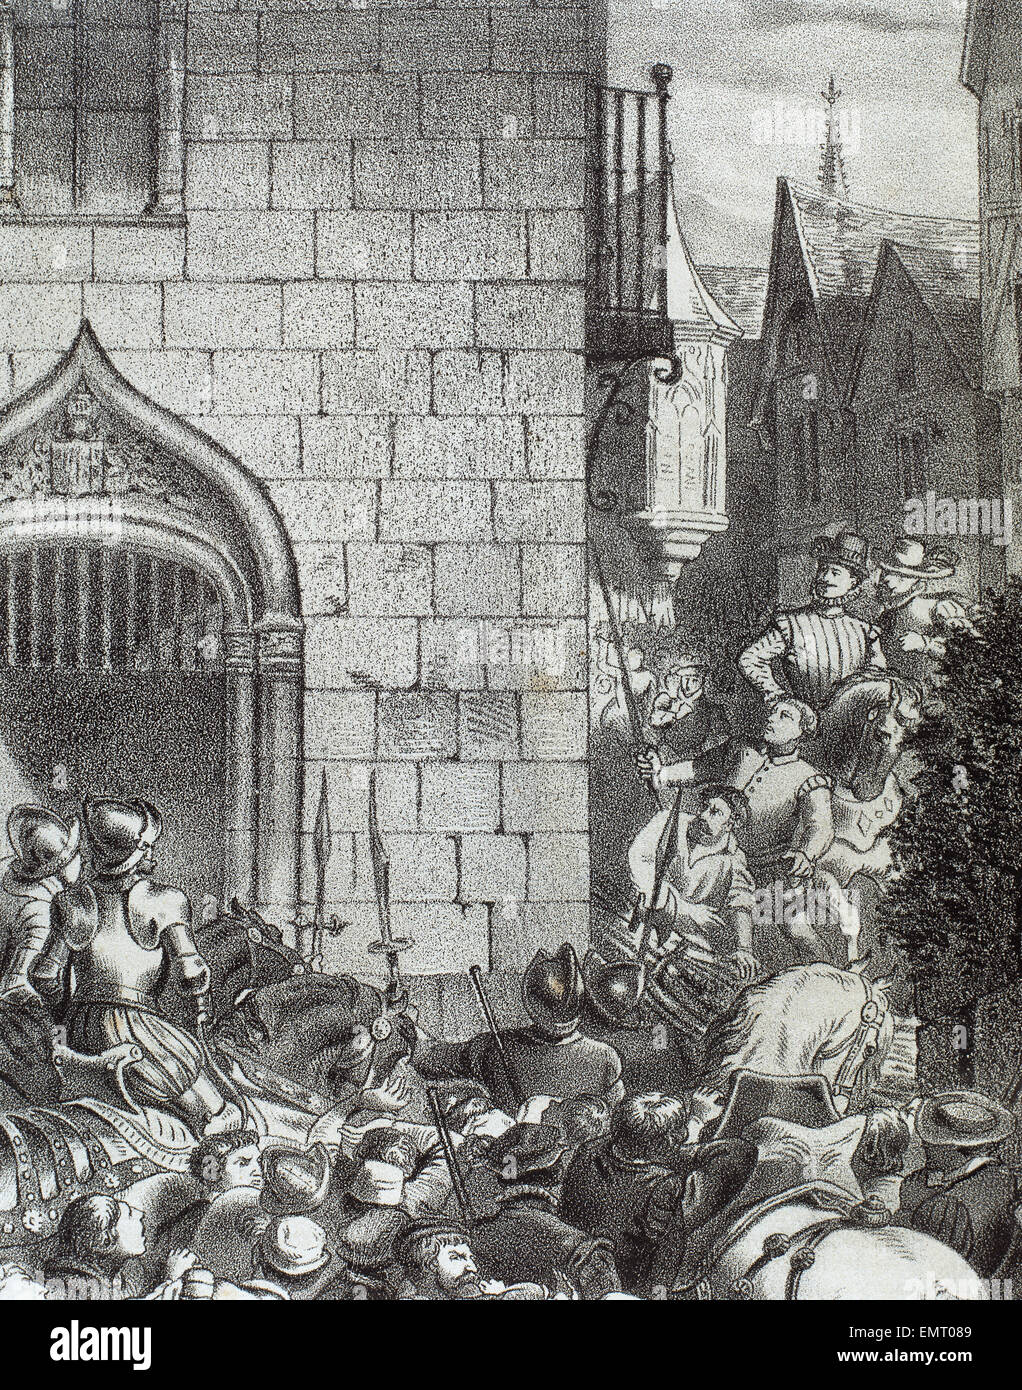 Alterazioni di Aragona. Ammutinamento di Saragozza, 1591. Incisione di Historia de Espana. Xix secolo. Foto Stock